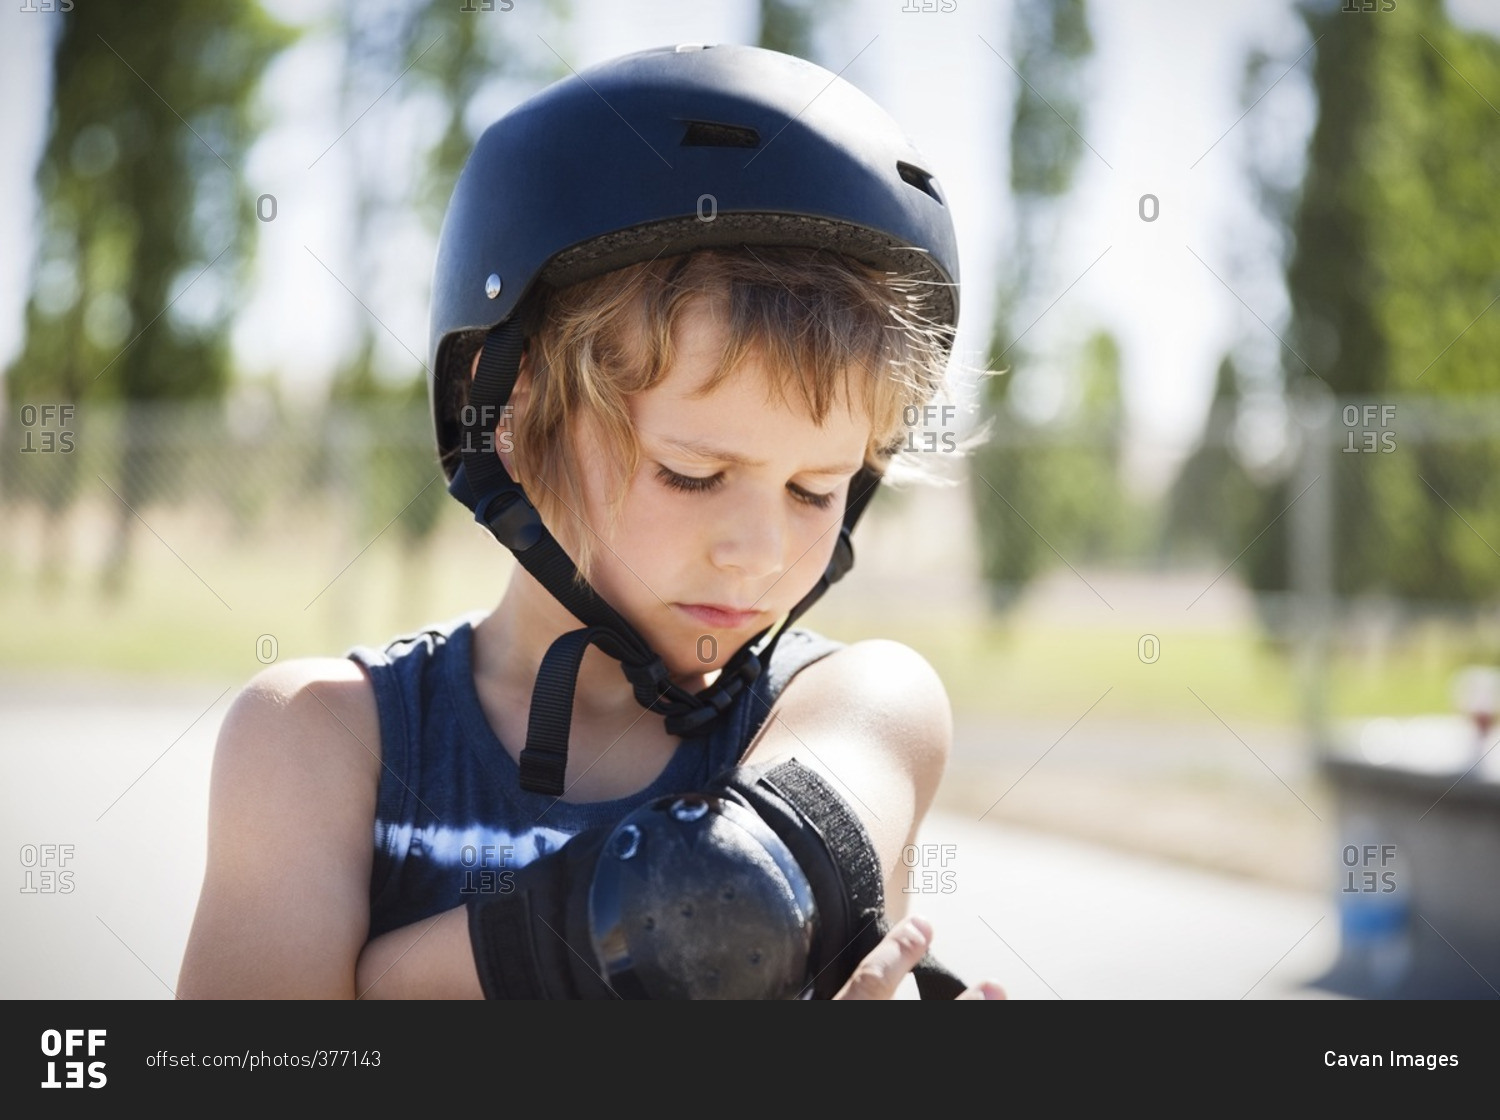 Boy adjusting elbow brace at skateboard park